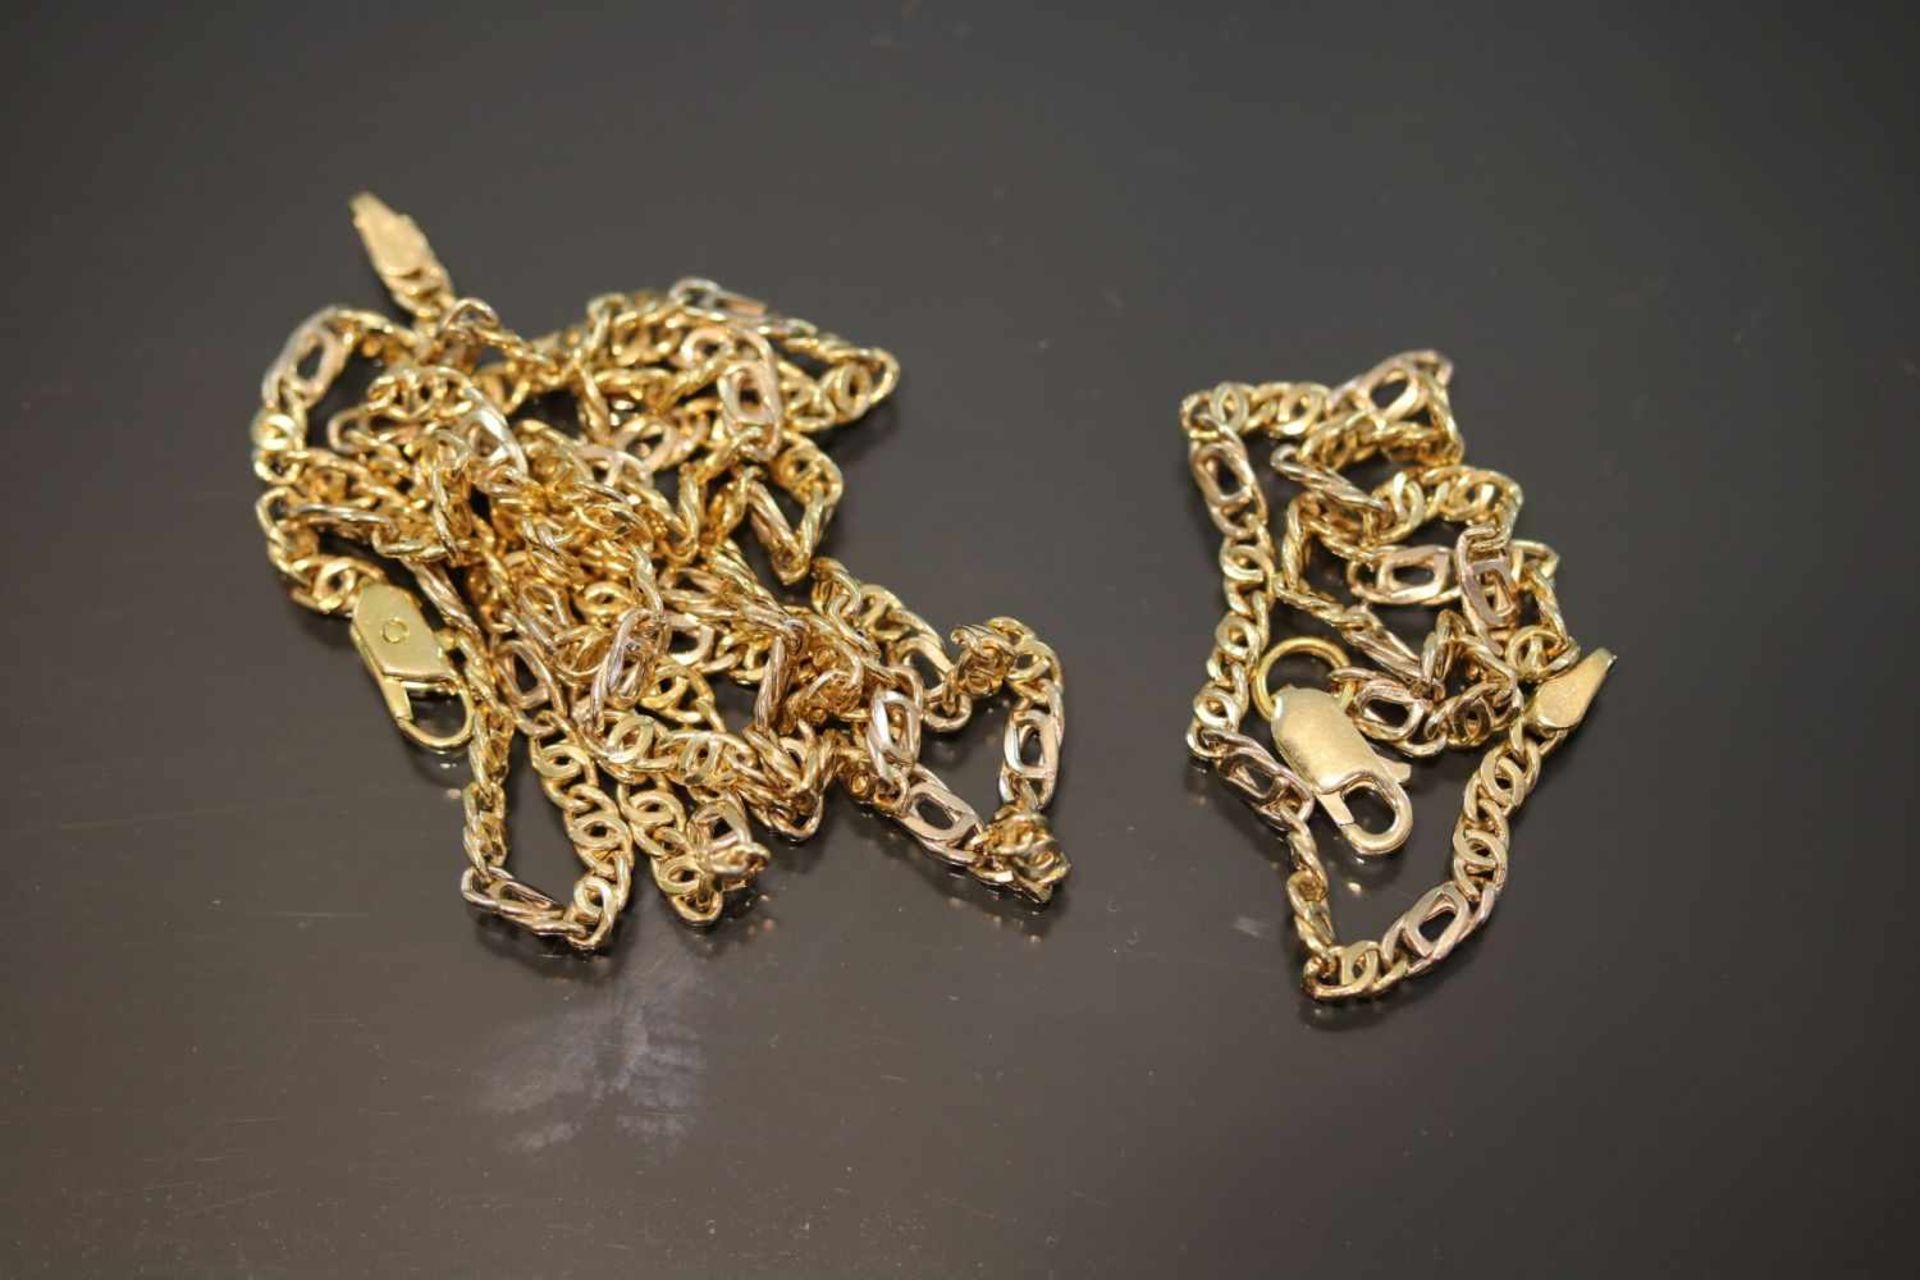 Armband/Halskette, 750 Gelbgold13,6 Gramm Schätzpreis: 1200,- - - -25.00 % buyer's premium on the